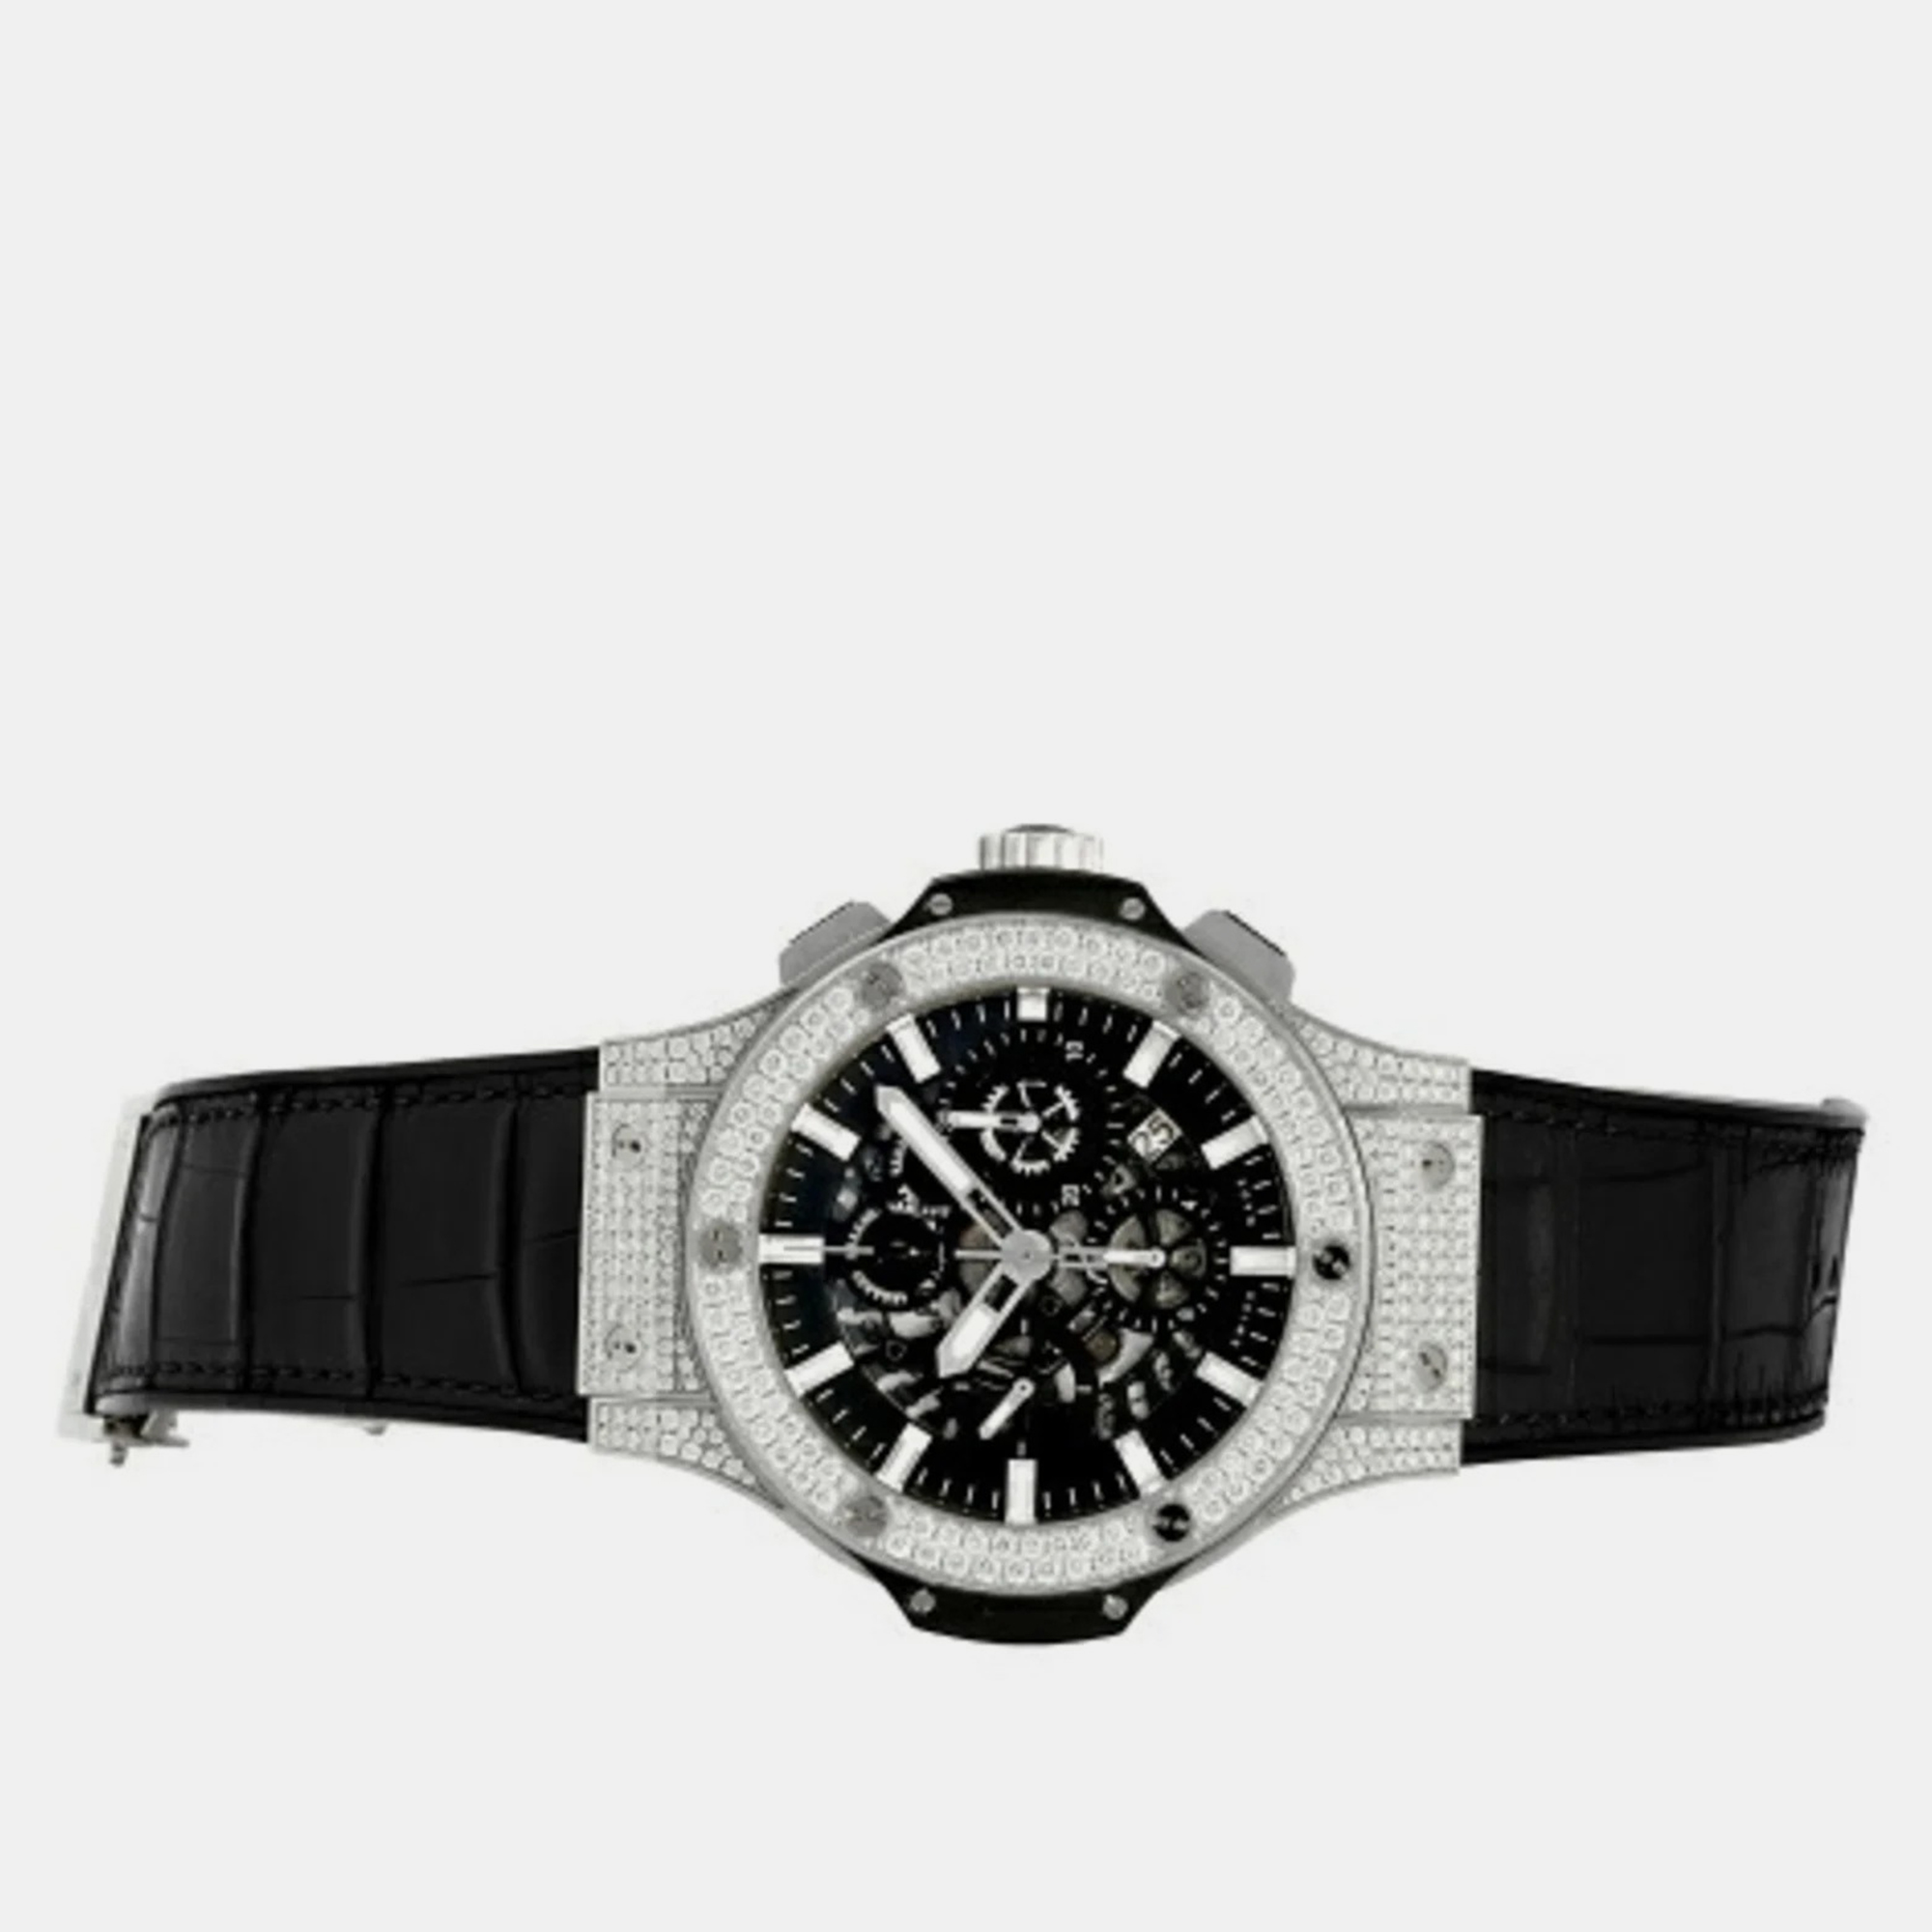 Hublot Black Stainless Steel Big Bang Aero 311.SX.1170.GR.1704 Men's Wristwatch 44 Mm